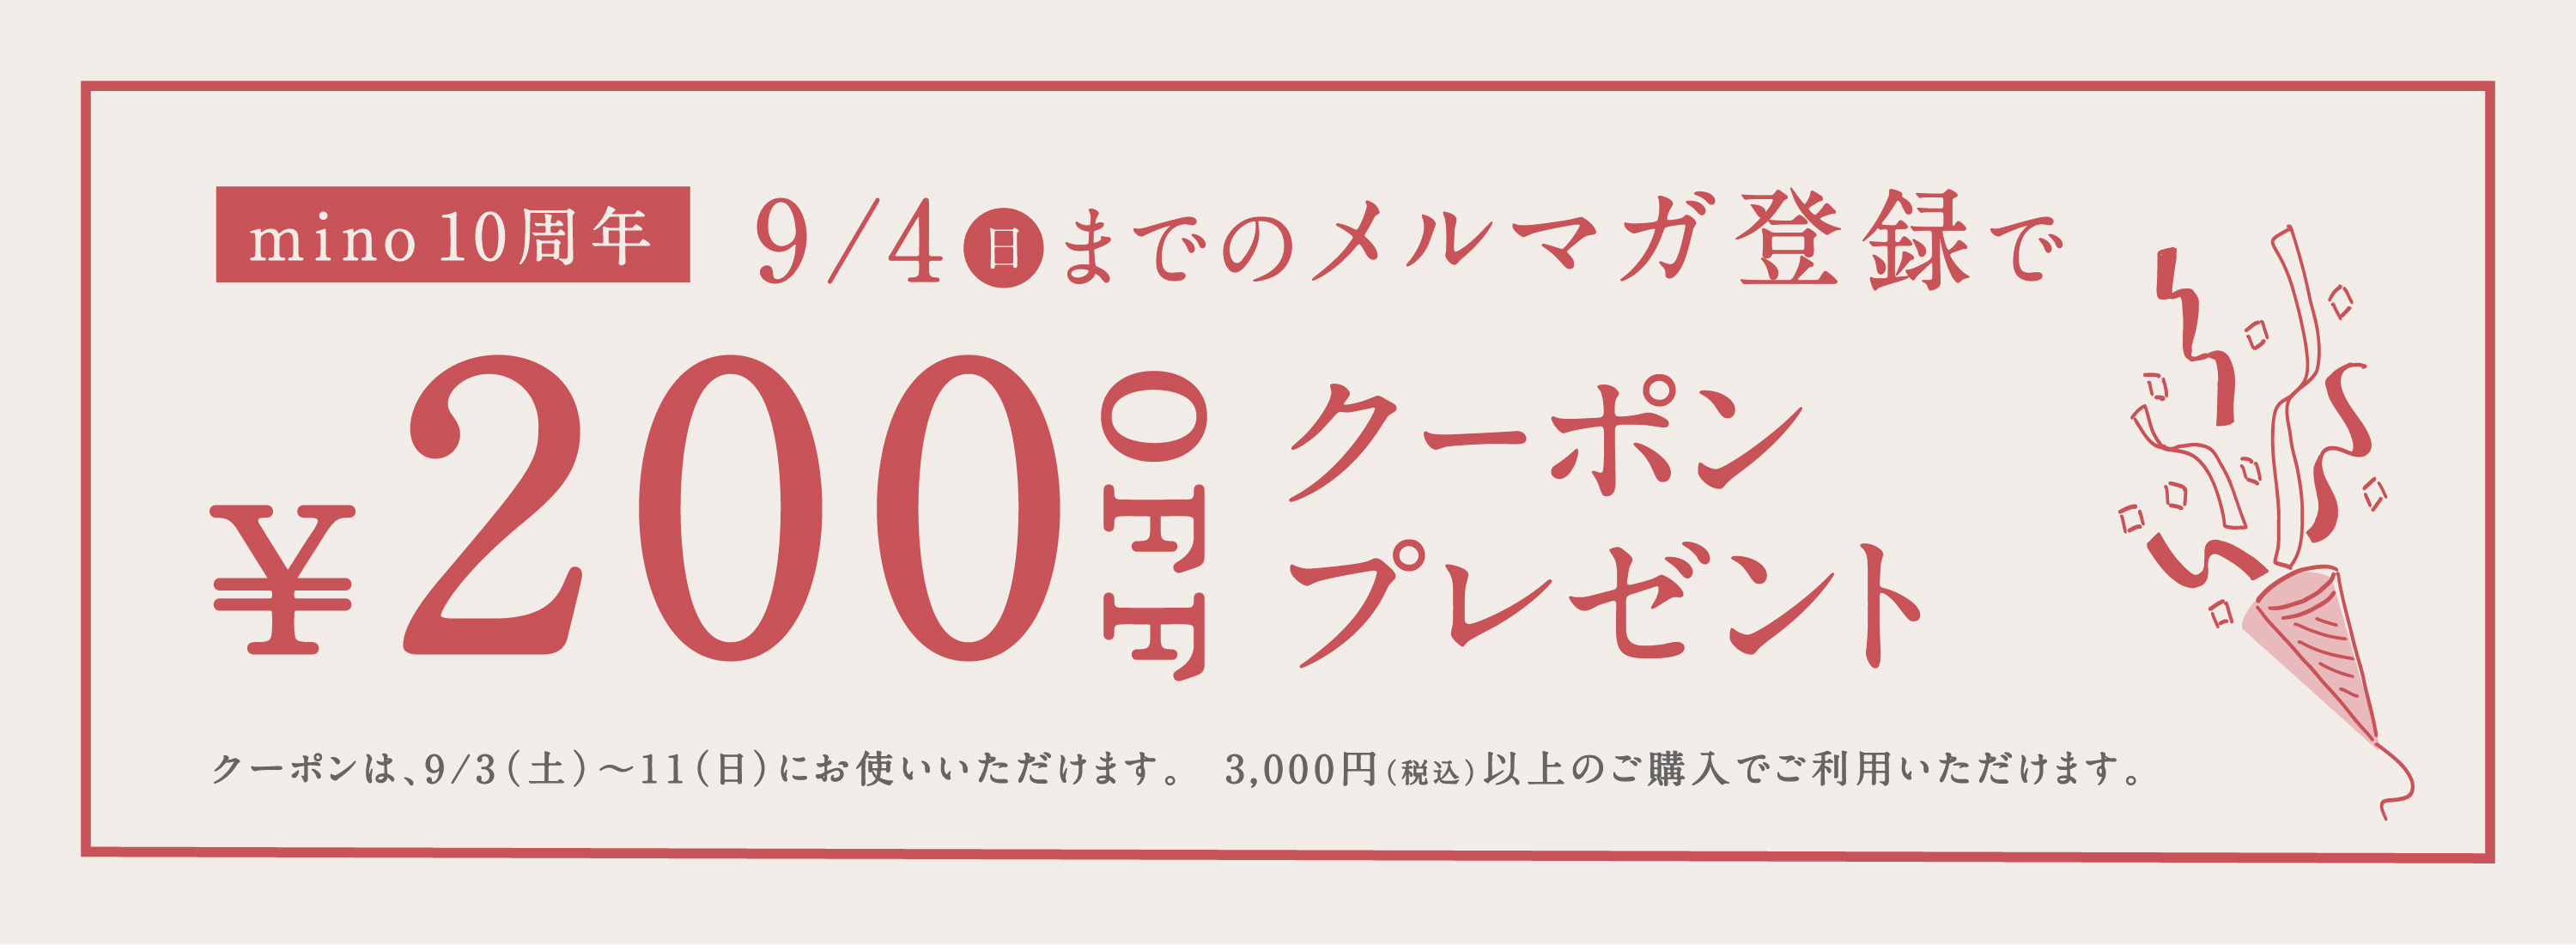 メルマガ200円キャンペーン